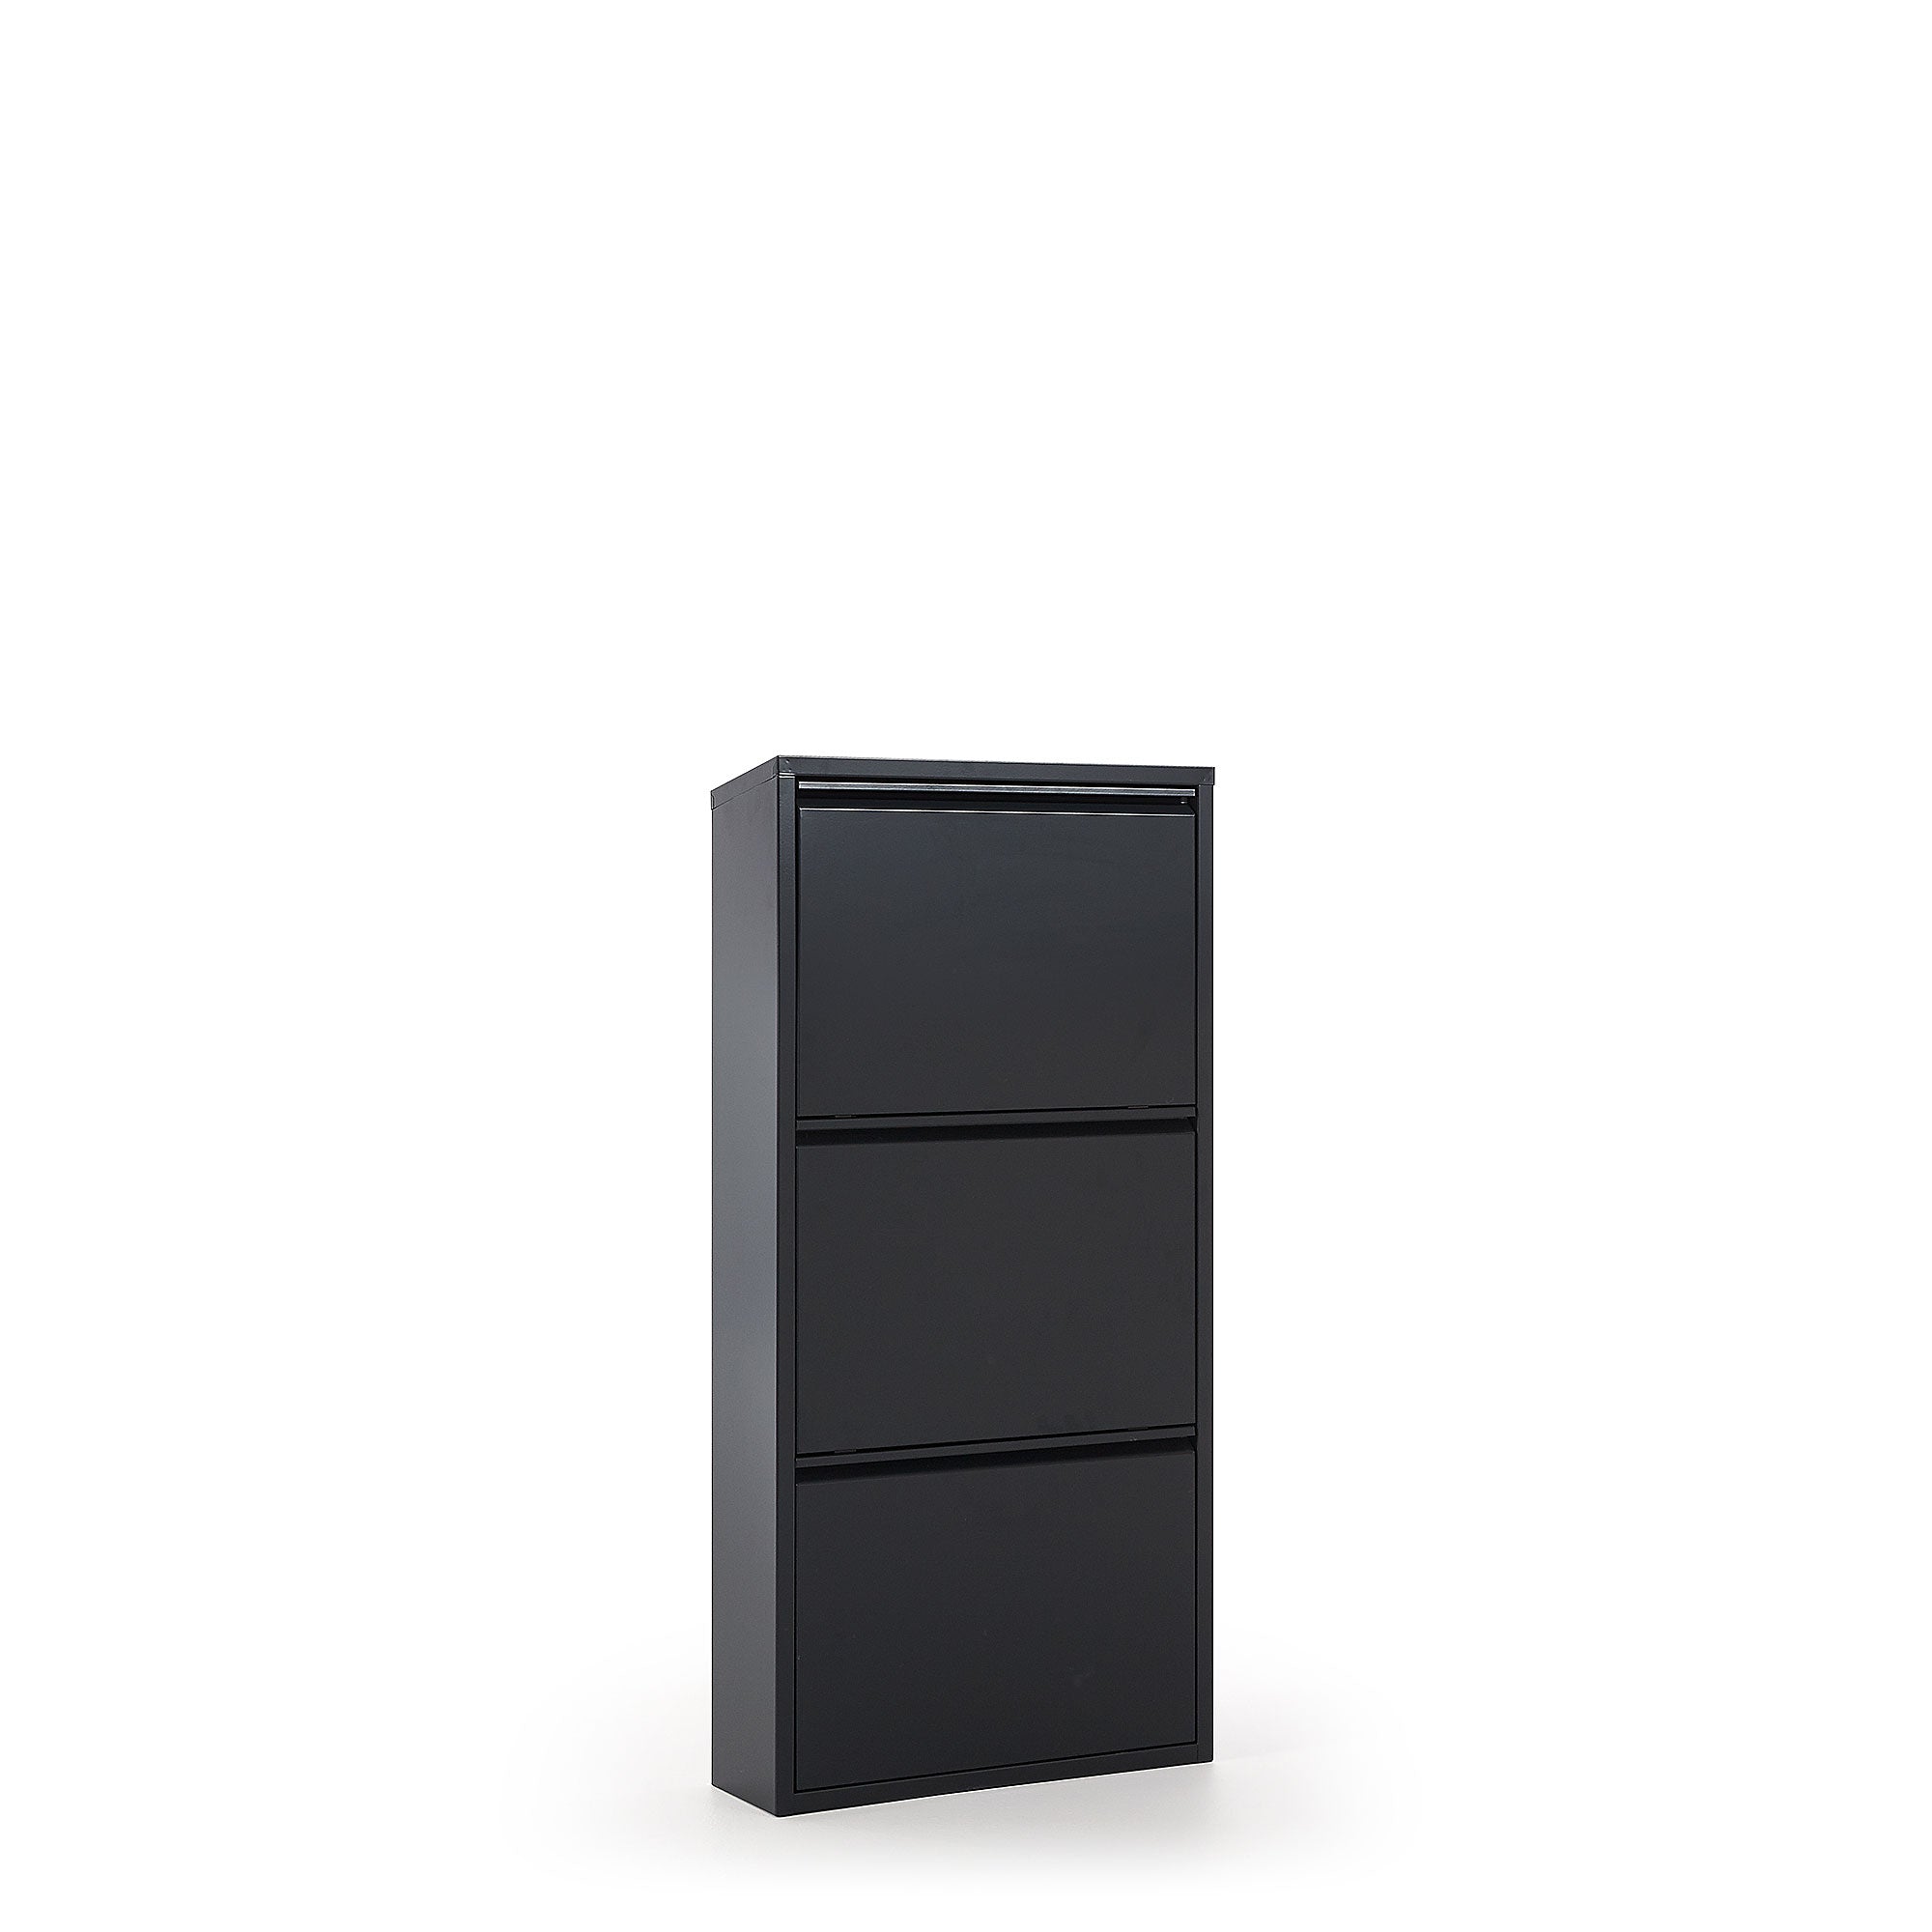 Ode shoe rack with 3 doors in black, 50 x 103 cm